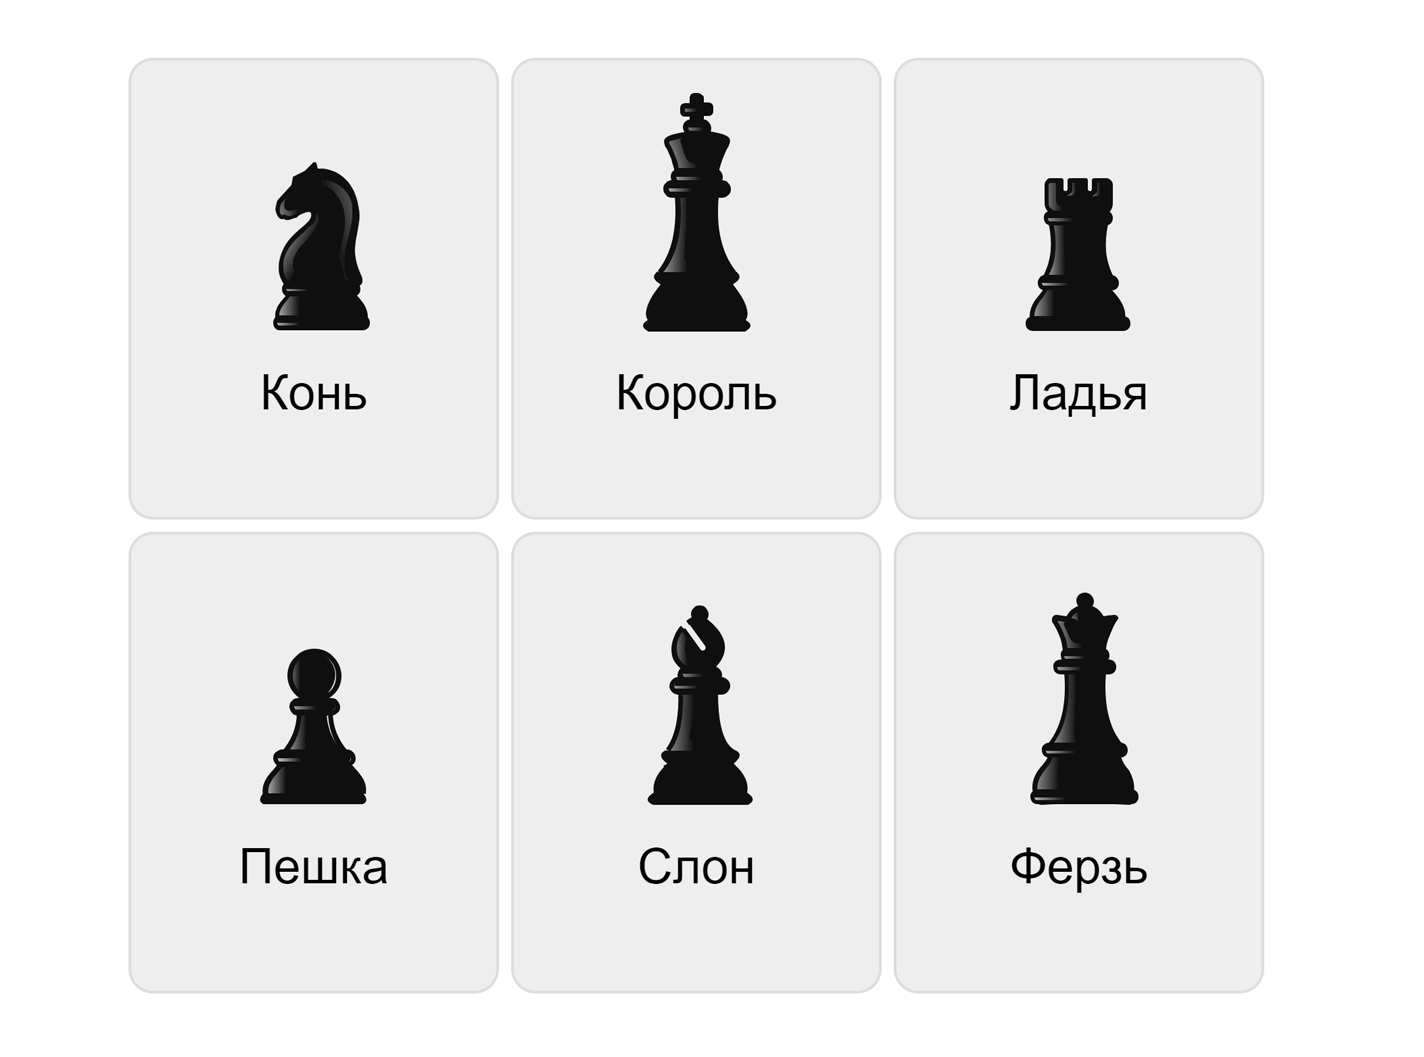 Piezas de ajedrez en ruso